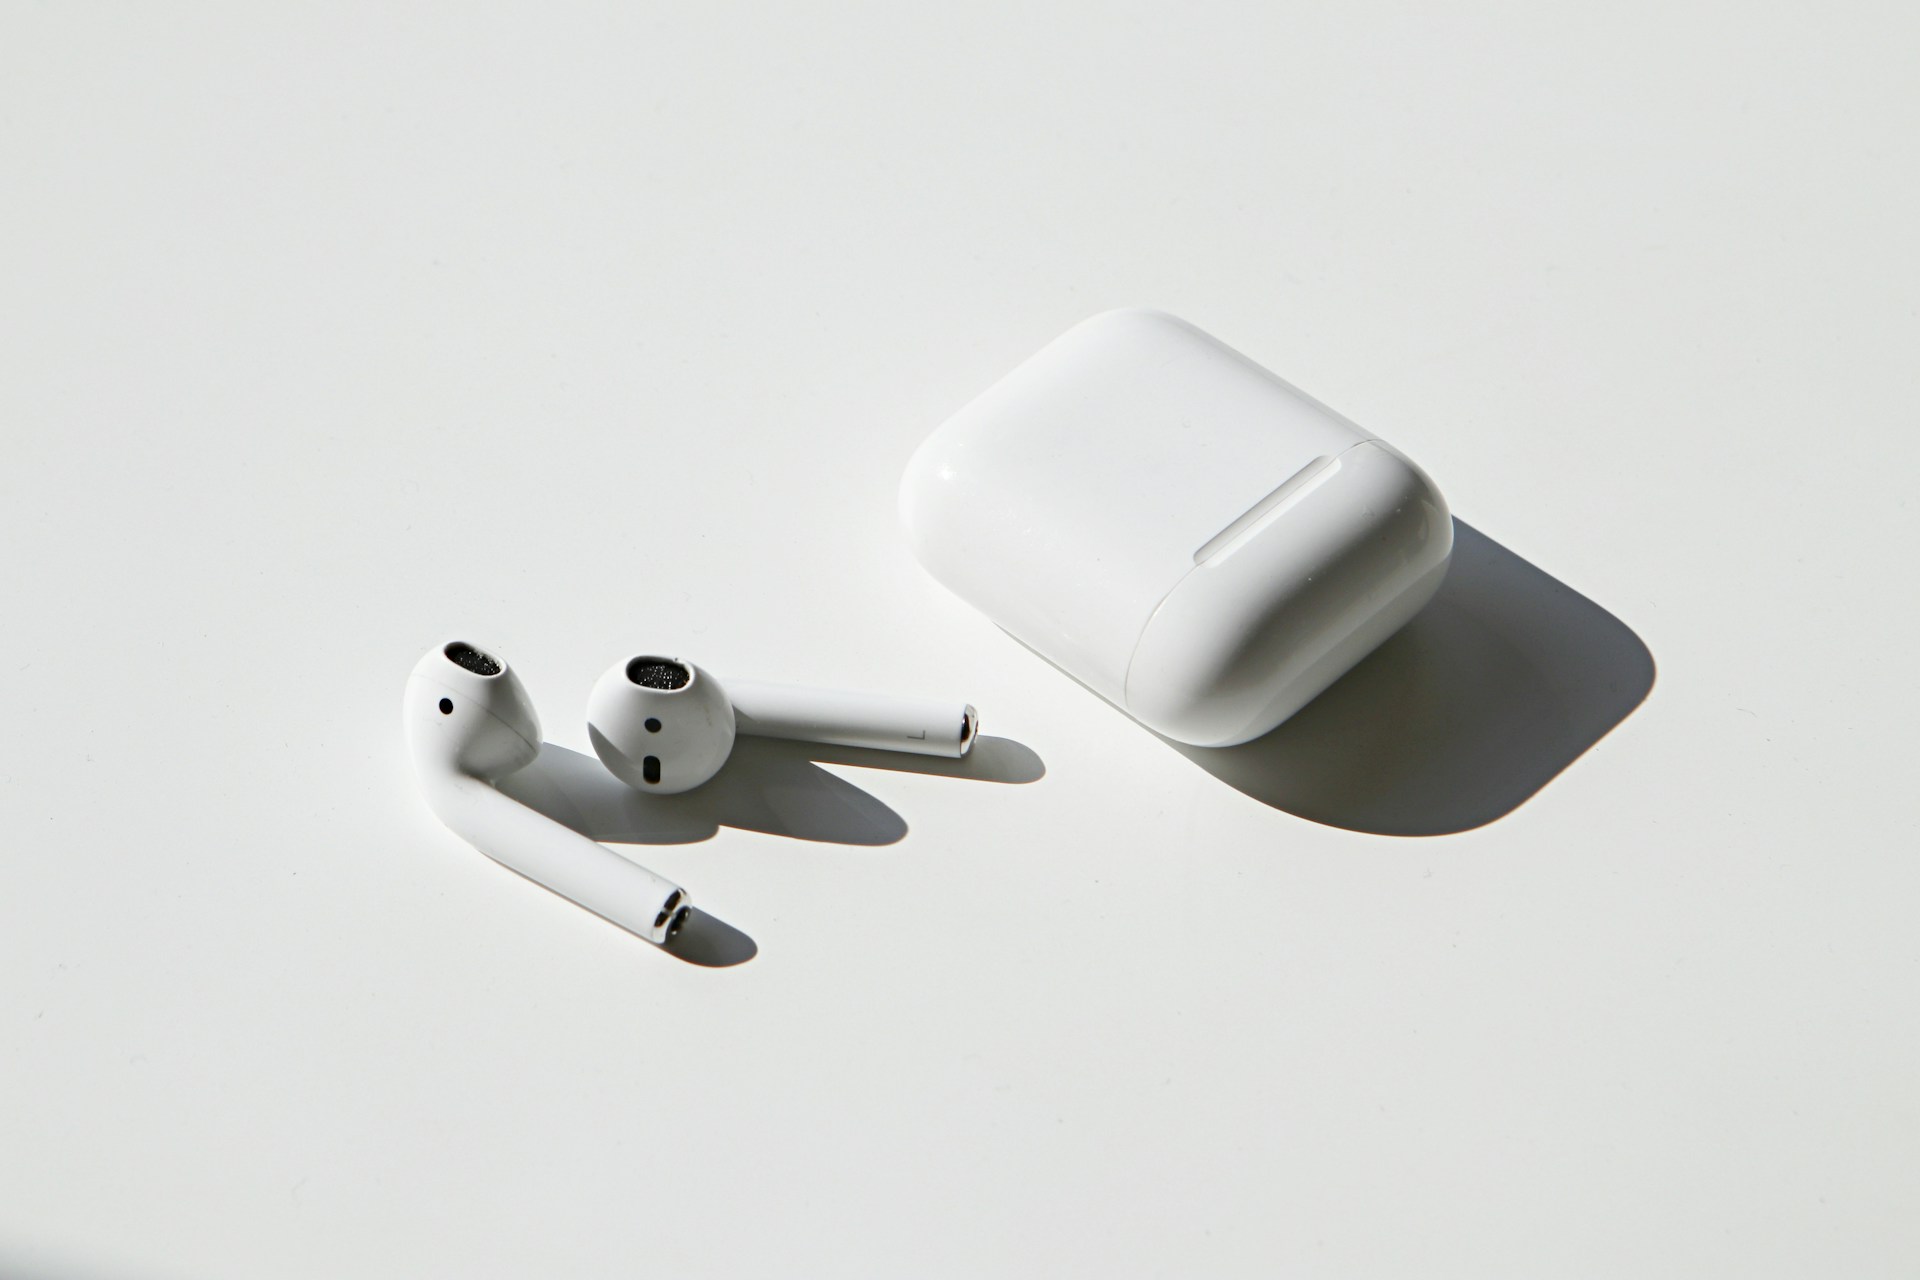 Werken Airpods straks ook als gehoorapparaat? 1